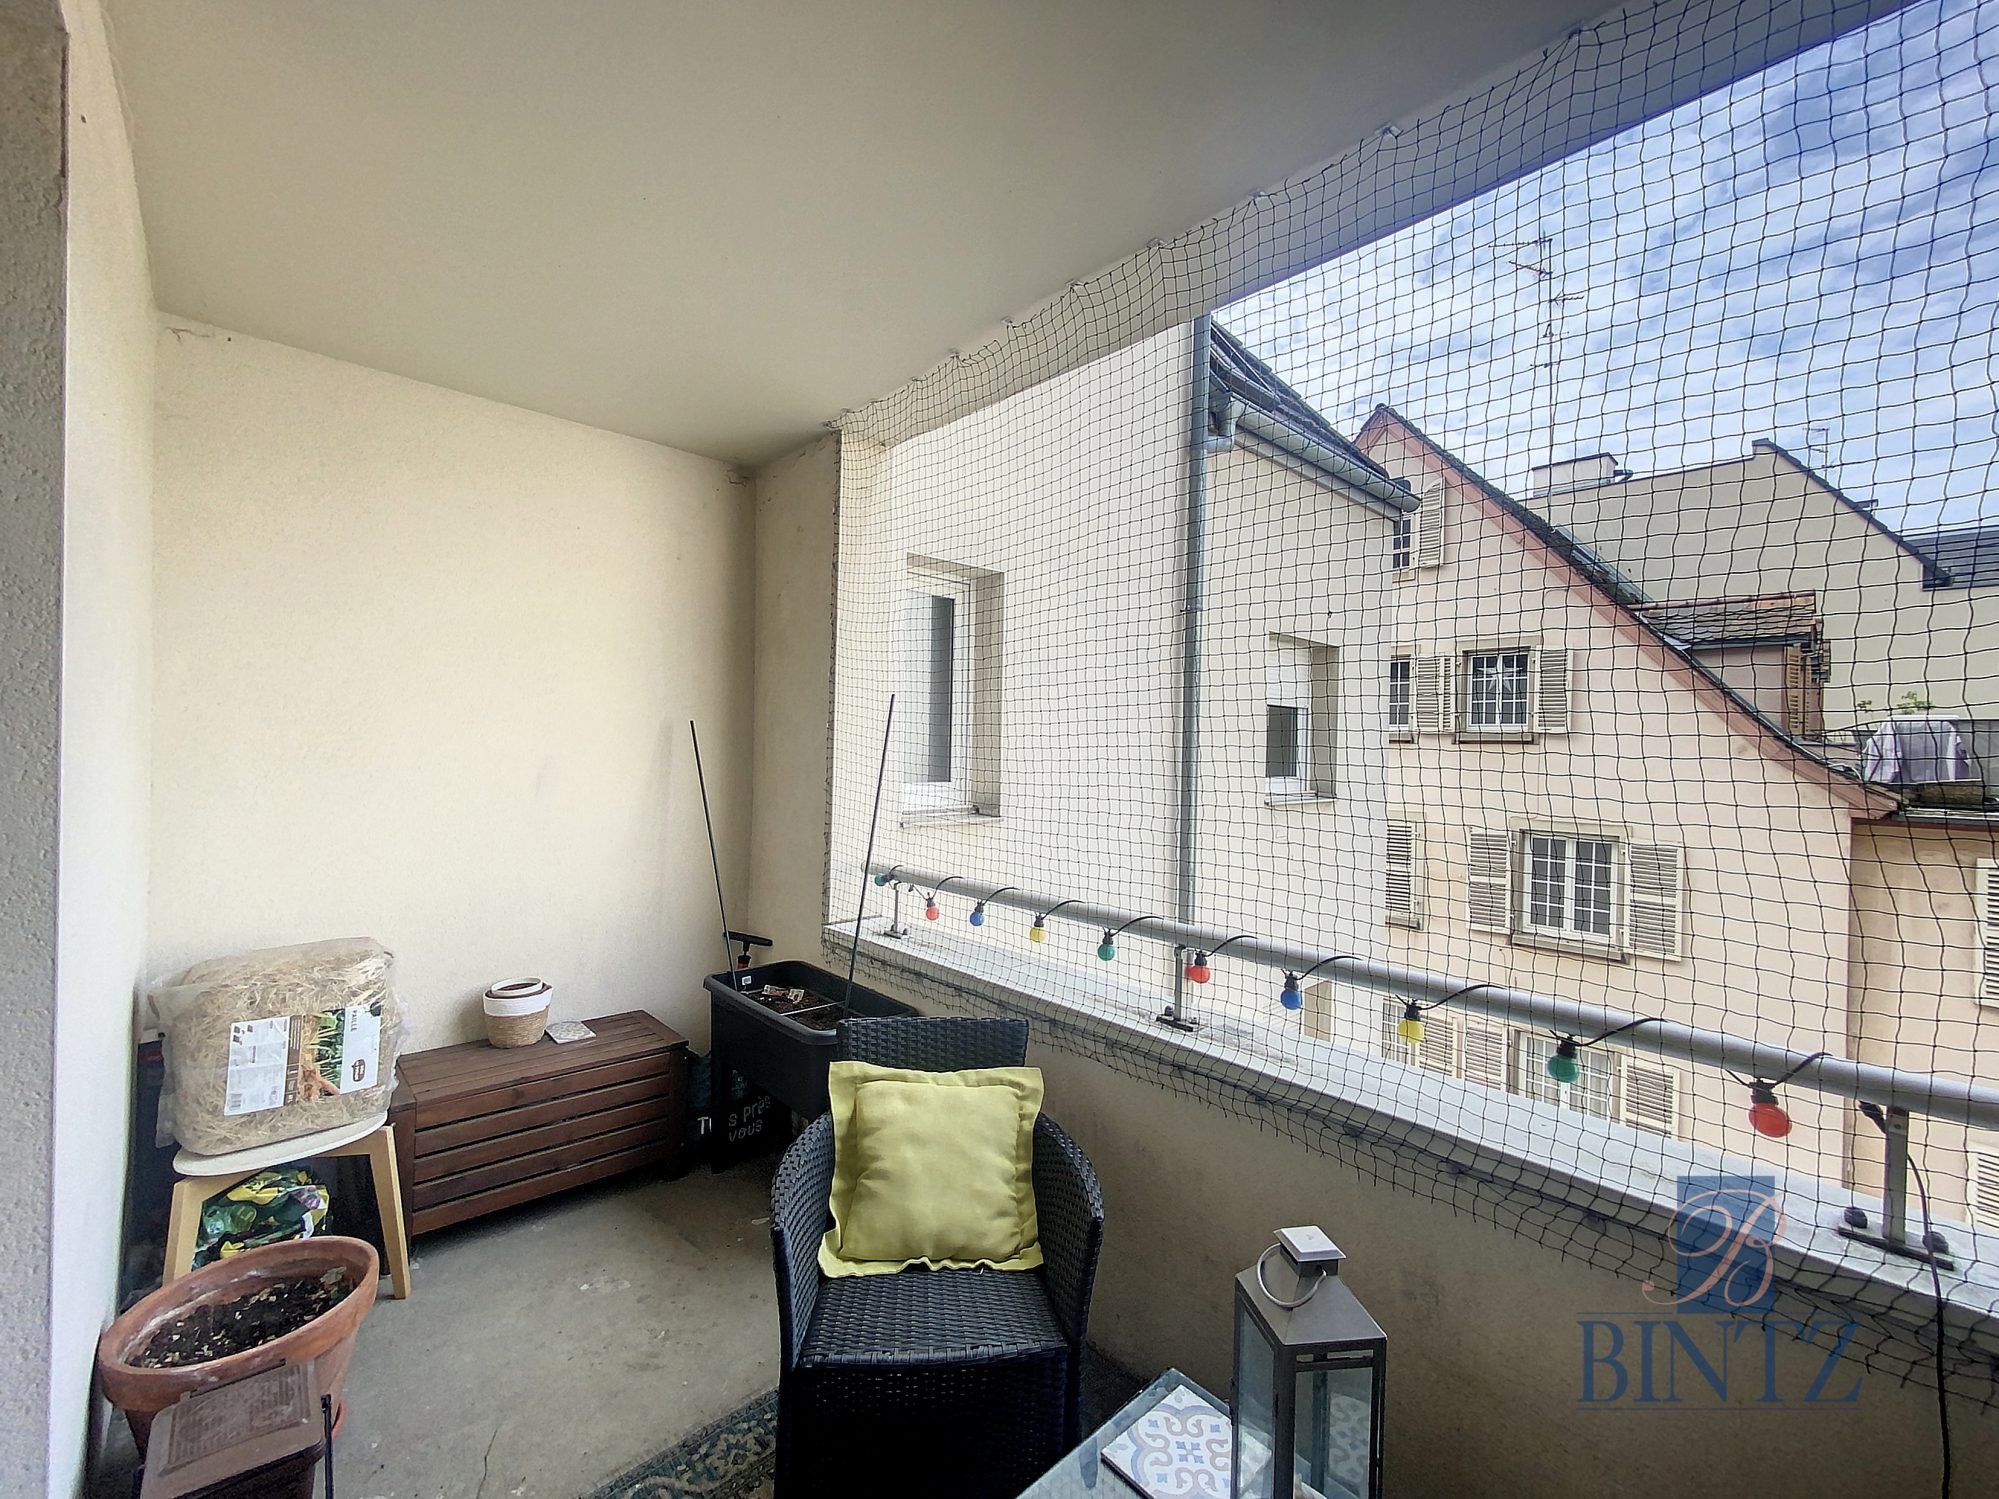 2 pièces 43m2 avec terrasse – Boulevard de Lyon - achat appartement Strasbourg - Bintz Immobilier - 5